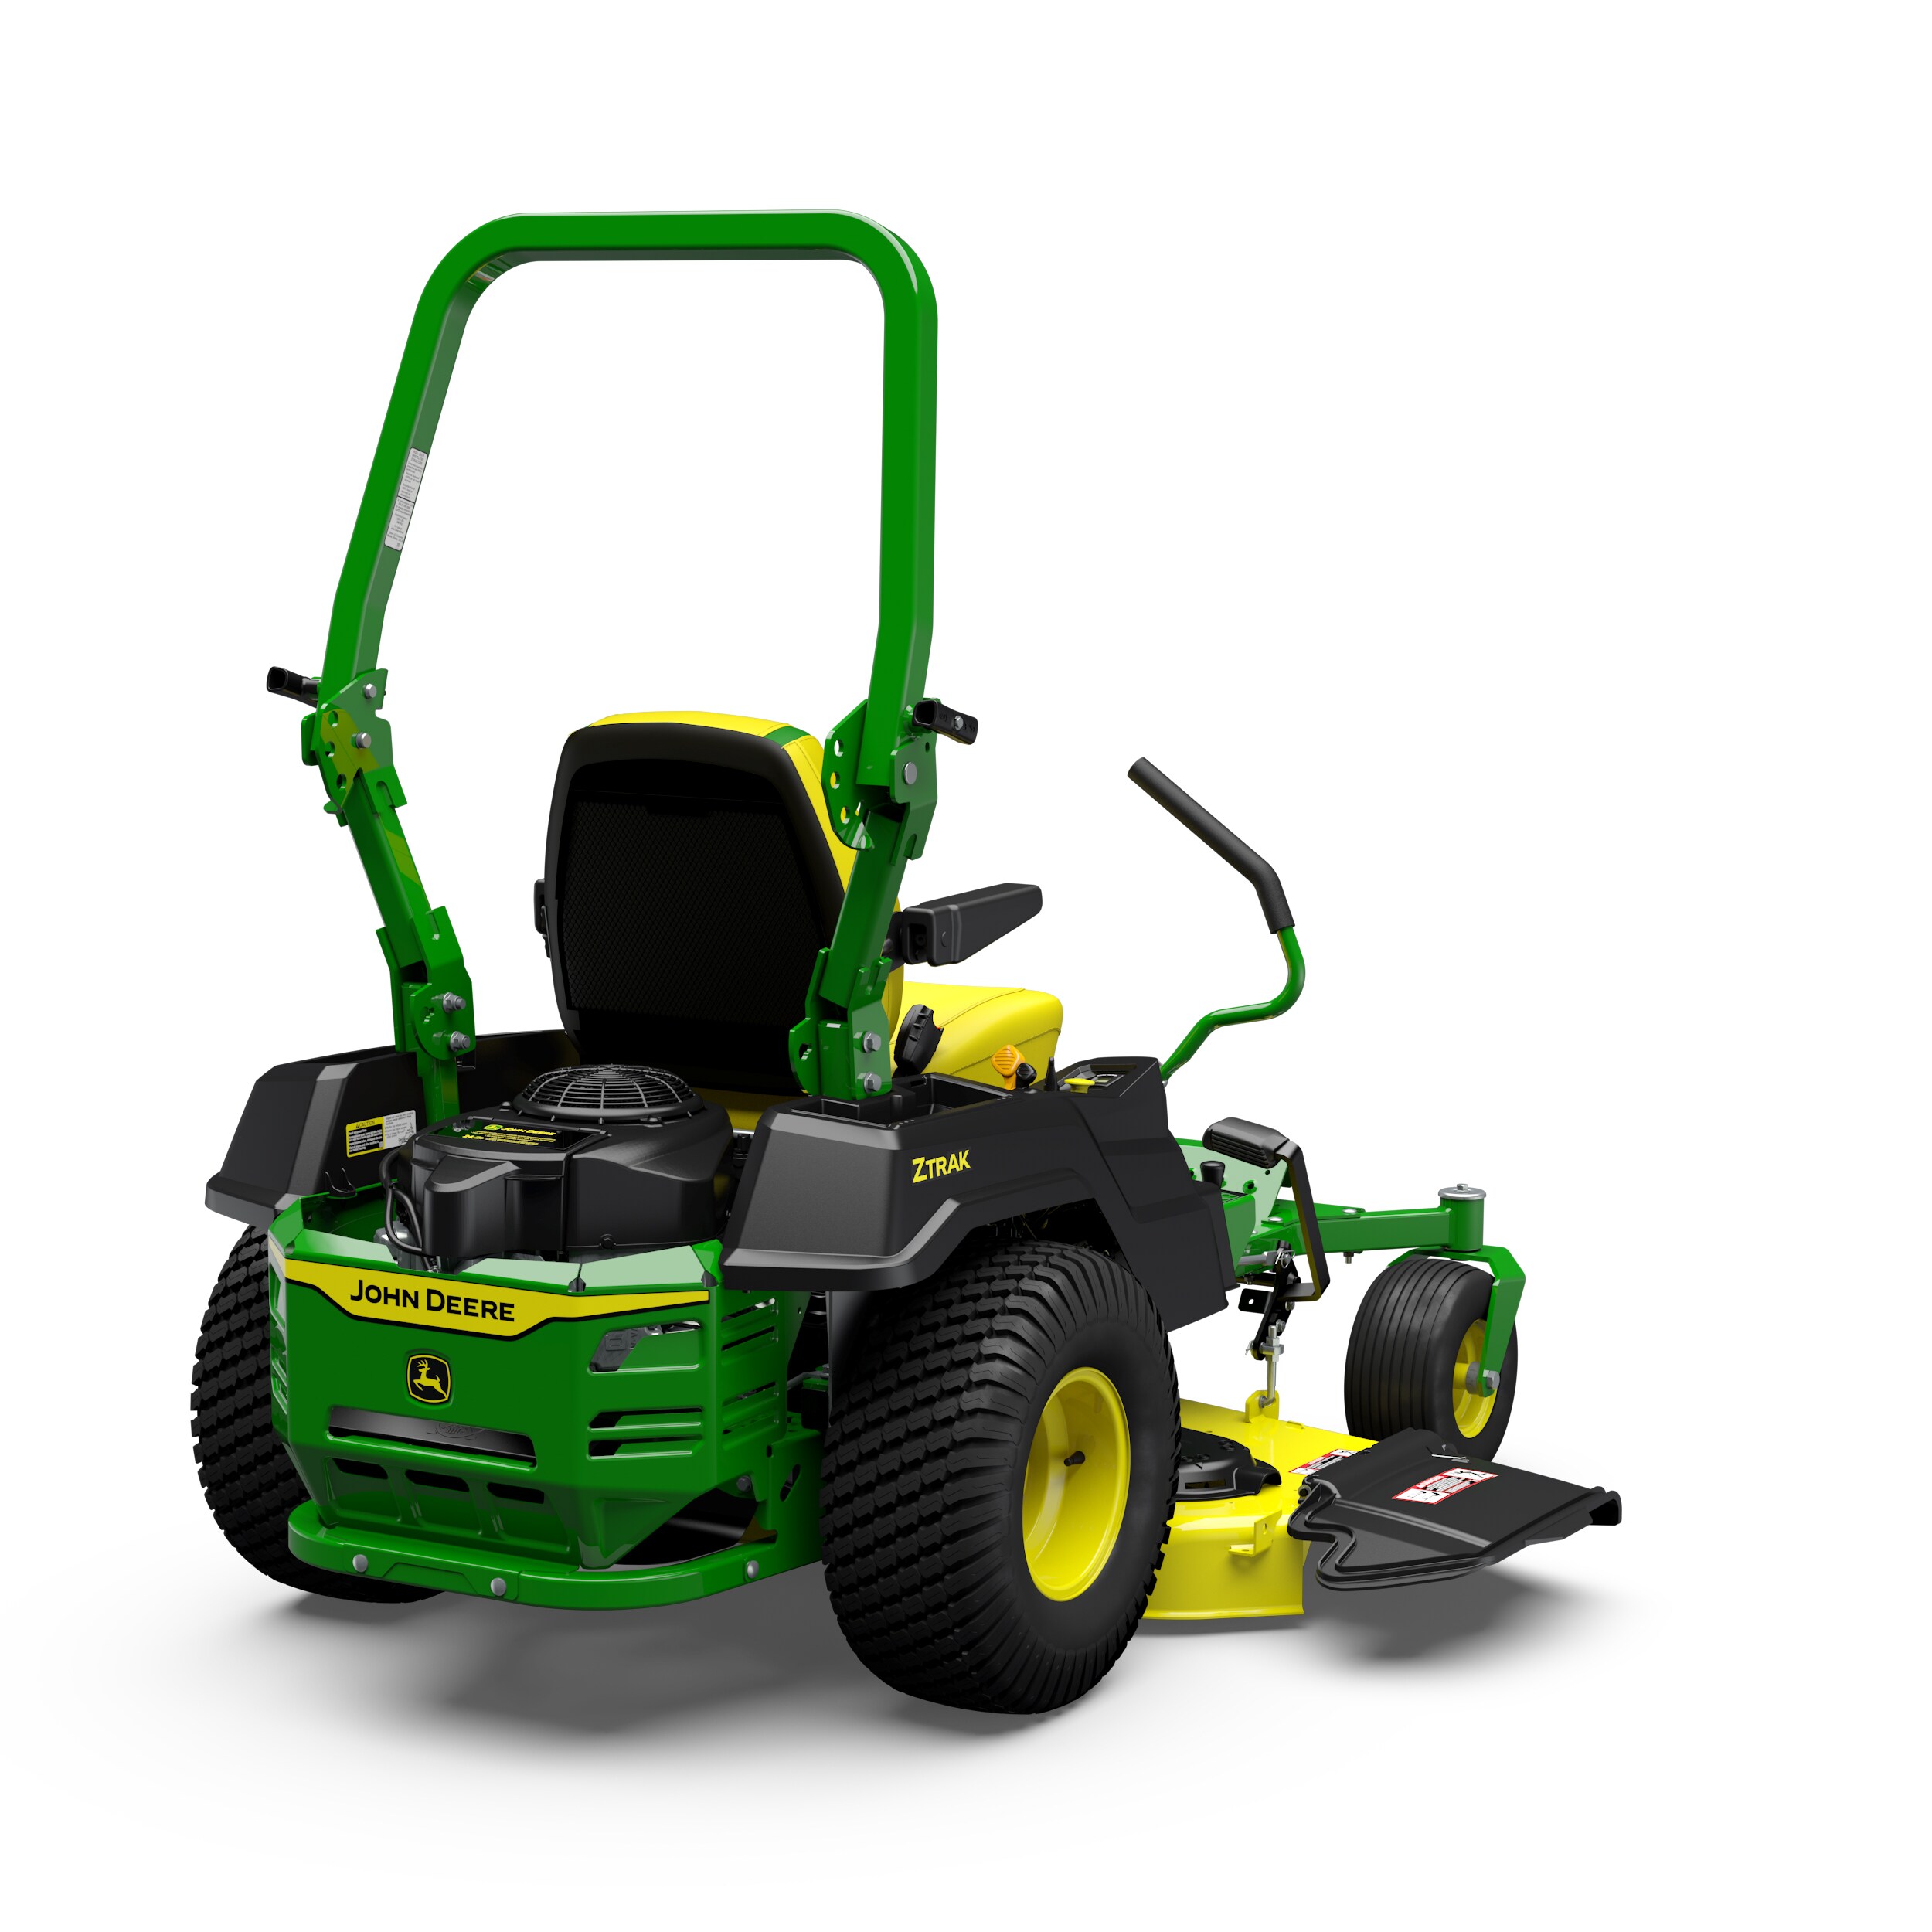 John Deere Z530M 48-in 24-HP V-twin Zero-turn Lawn Mower in the 